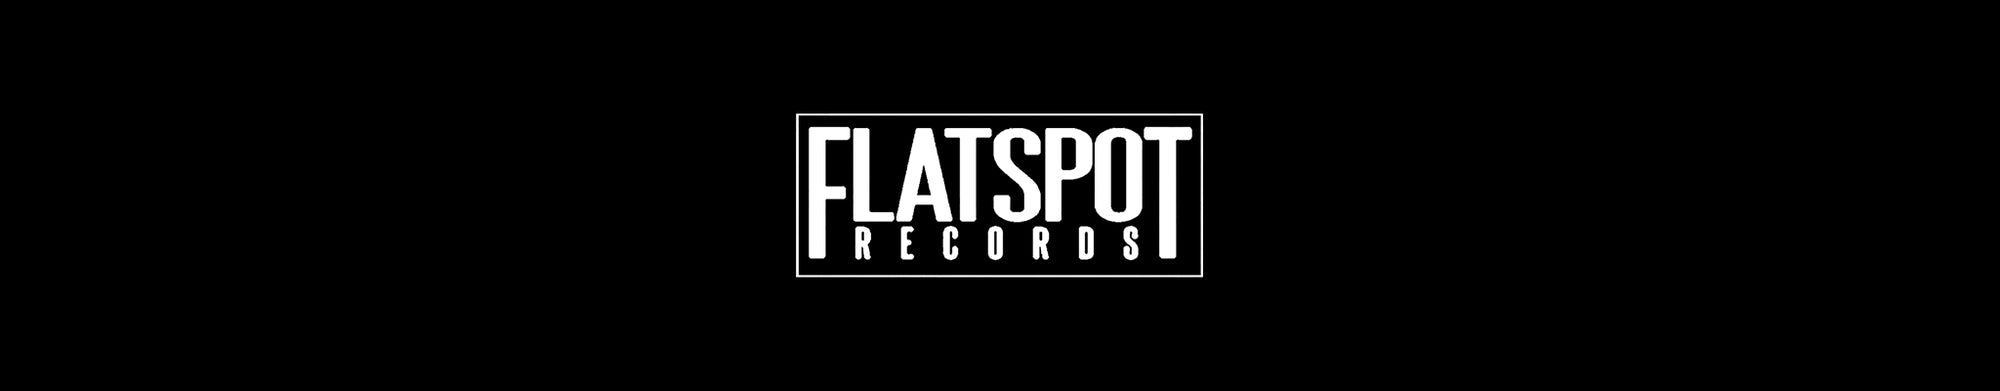 FLATSPOT RECORDS